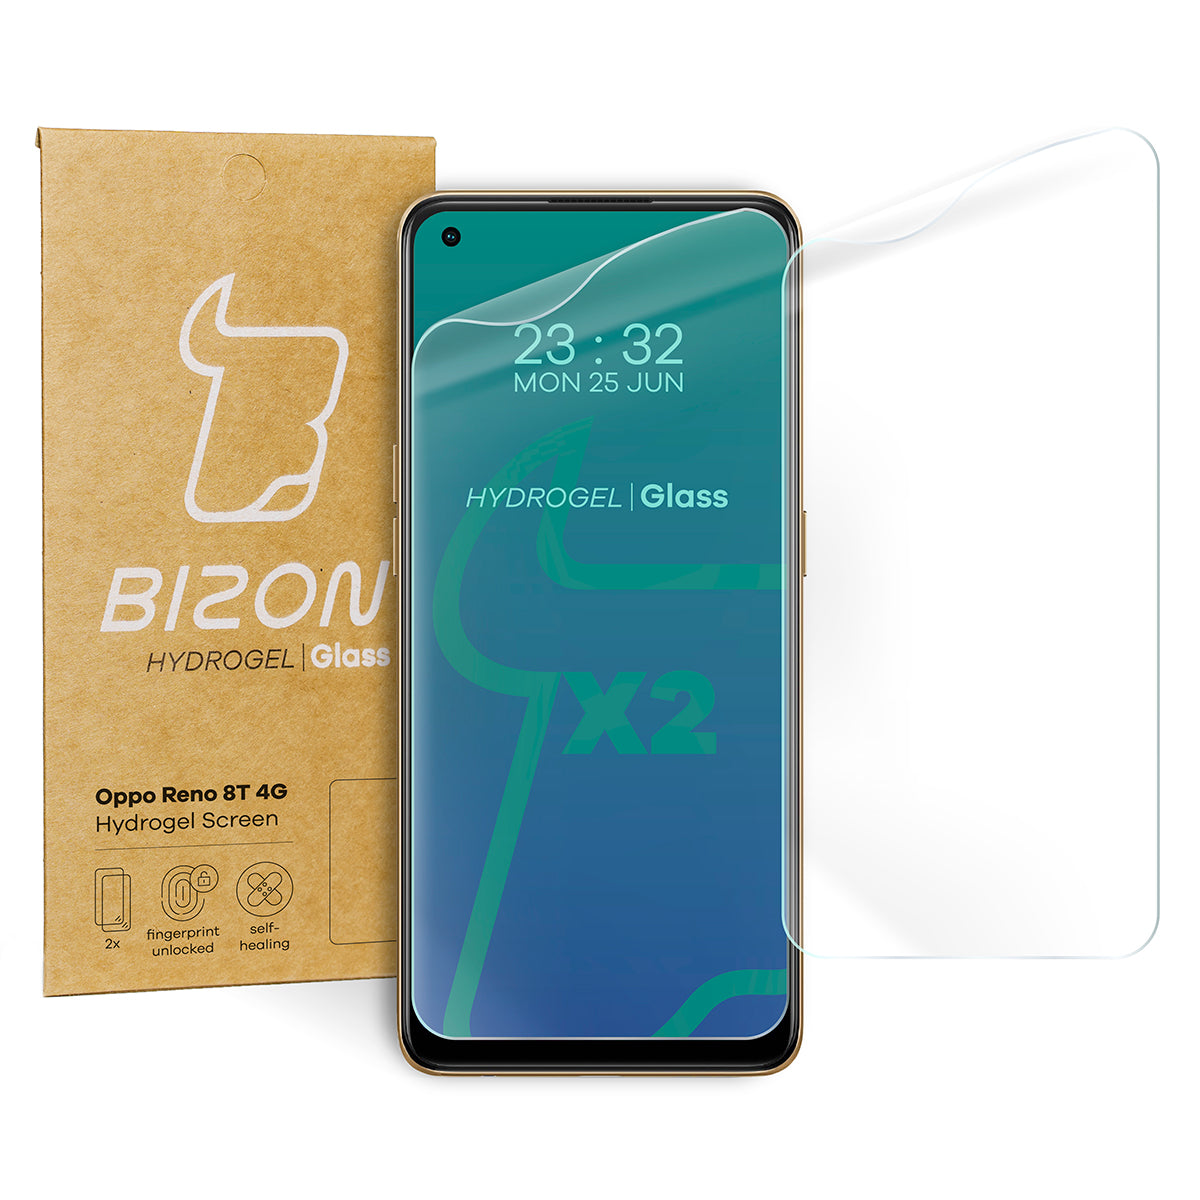 Hydrogel Folie für den Bildschirm Bizon Glass Hydrogel für Oppo Reno 8T 4G, 2 Stück